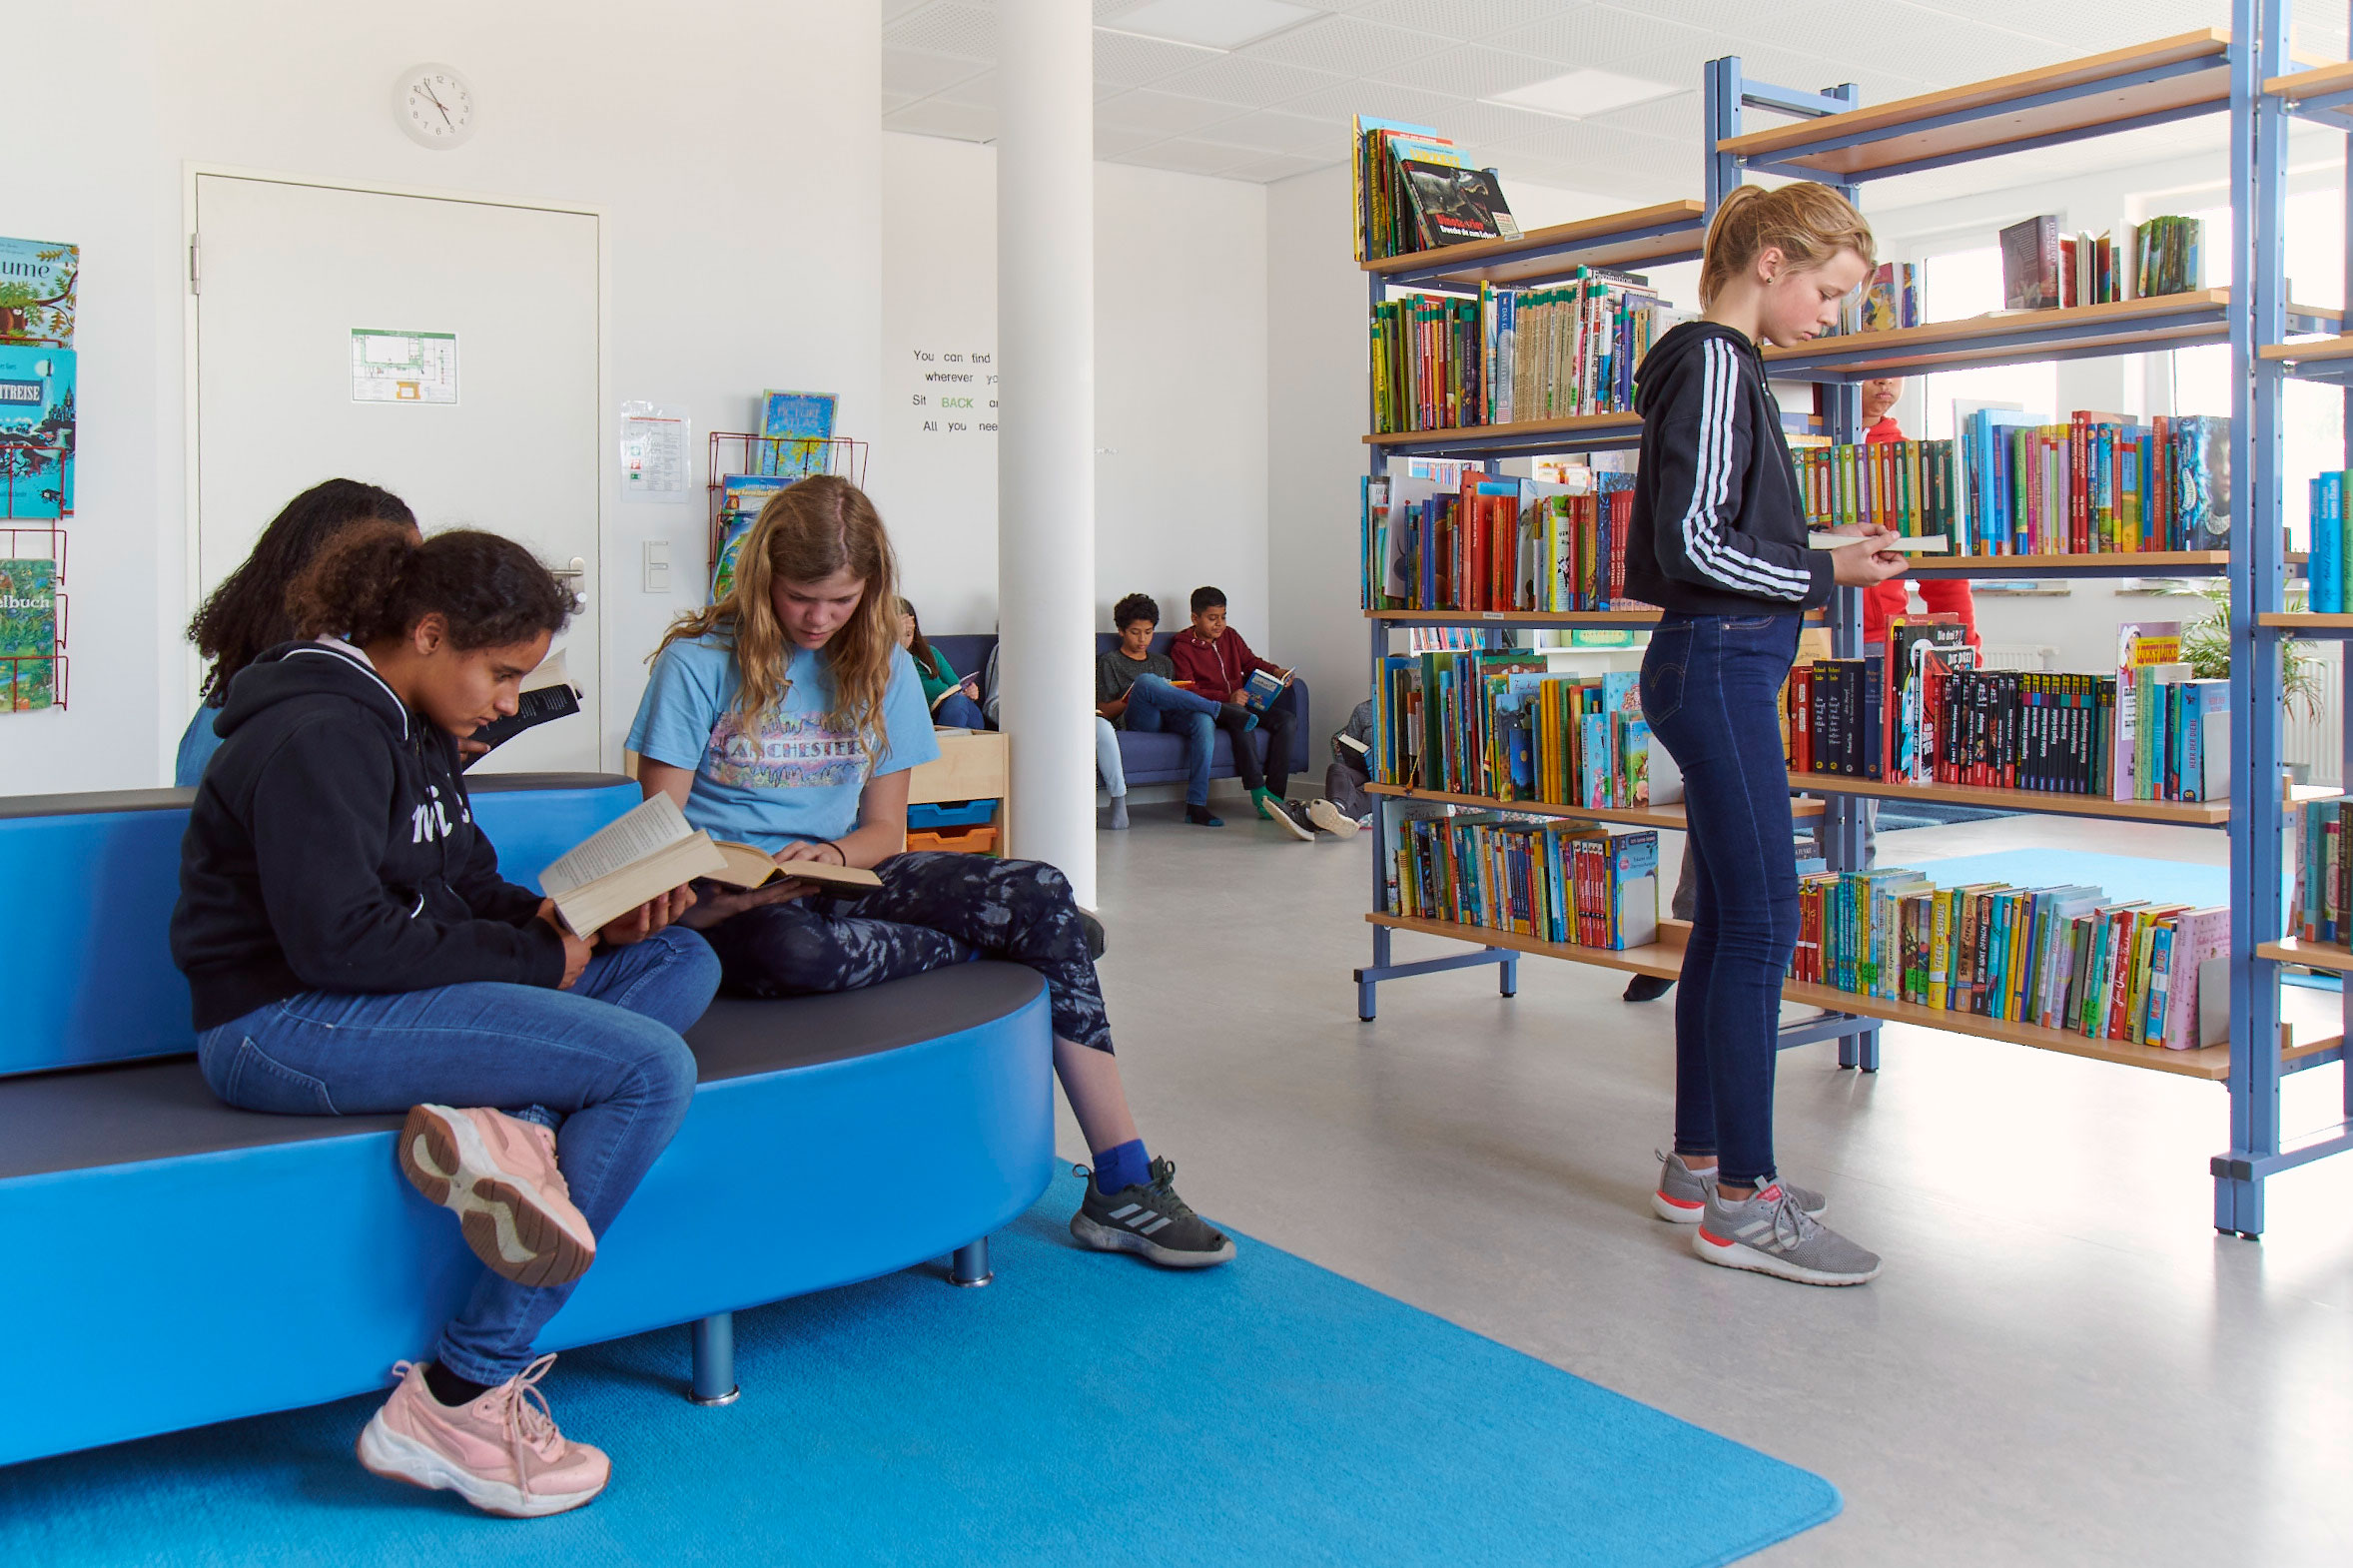 Mehrere Schülerinnen und Schüler sind in der Bibliothek und lesen in Büchern. Rechts im Bild steht ein Bücherregal.